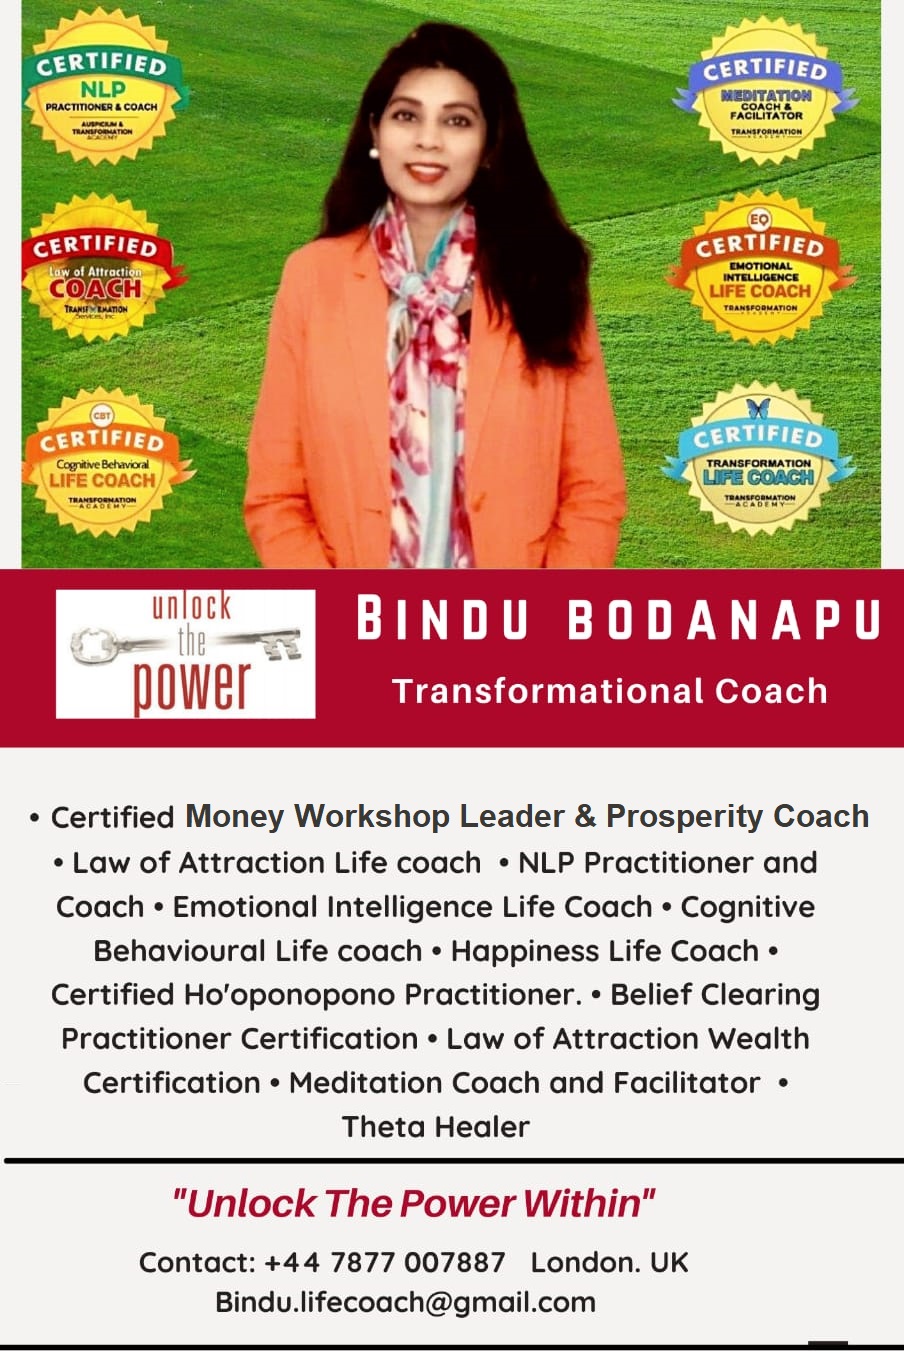 Bindu Bodanapu - Transformational Coach, Life Coach - London